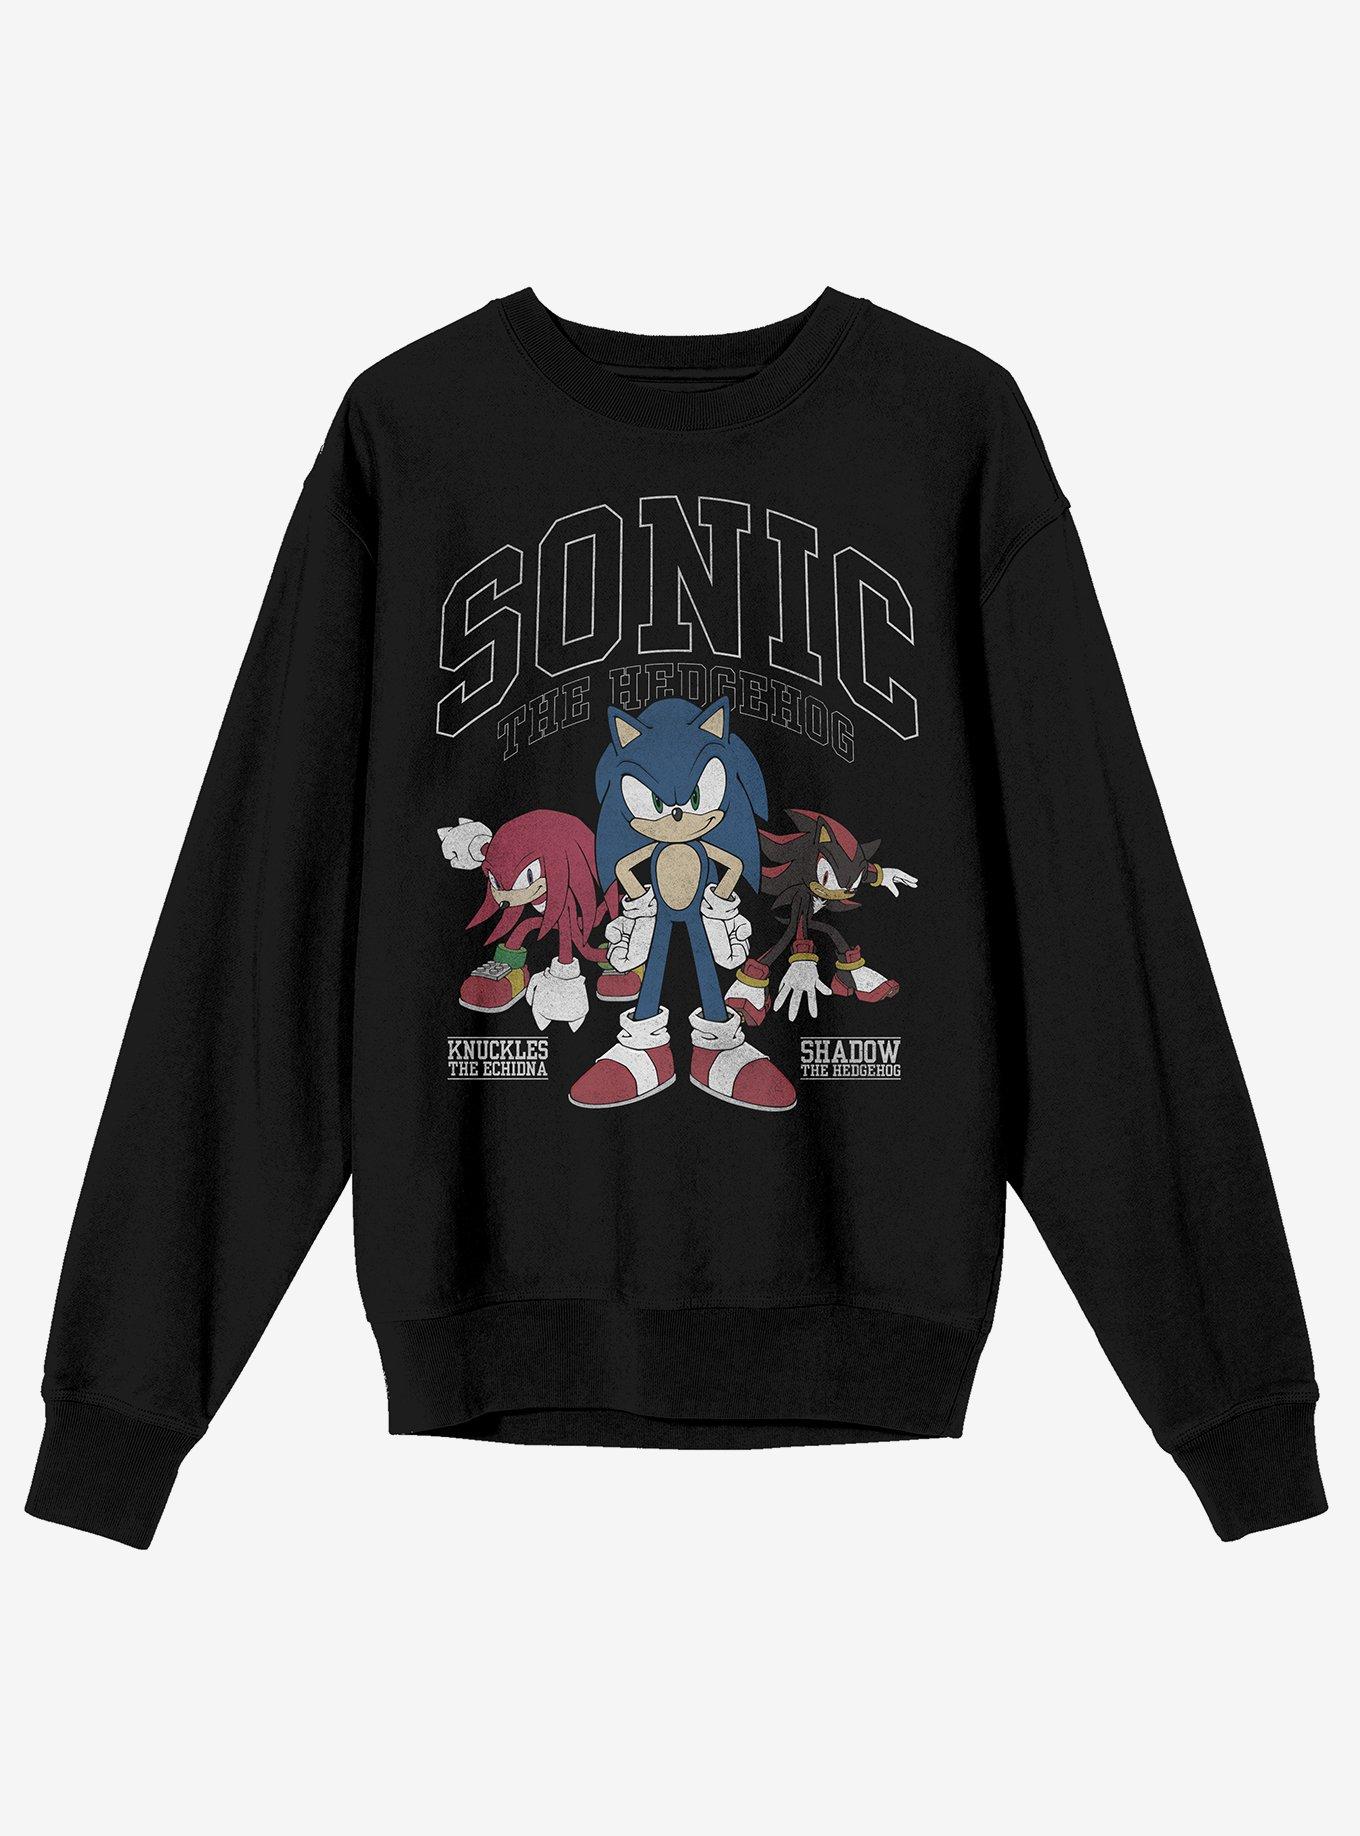 Sonic The Hedgehog Tonal Trio Sweatshirt, BLACK, hi-res